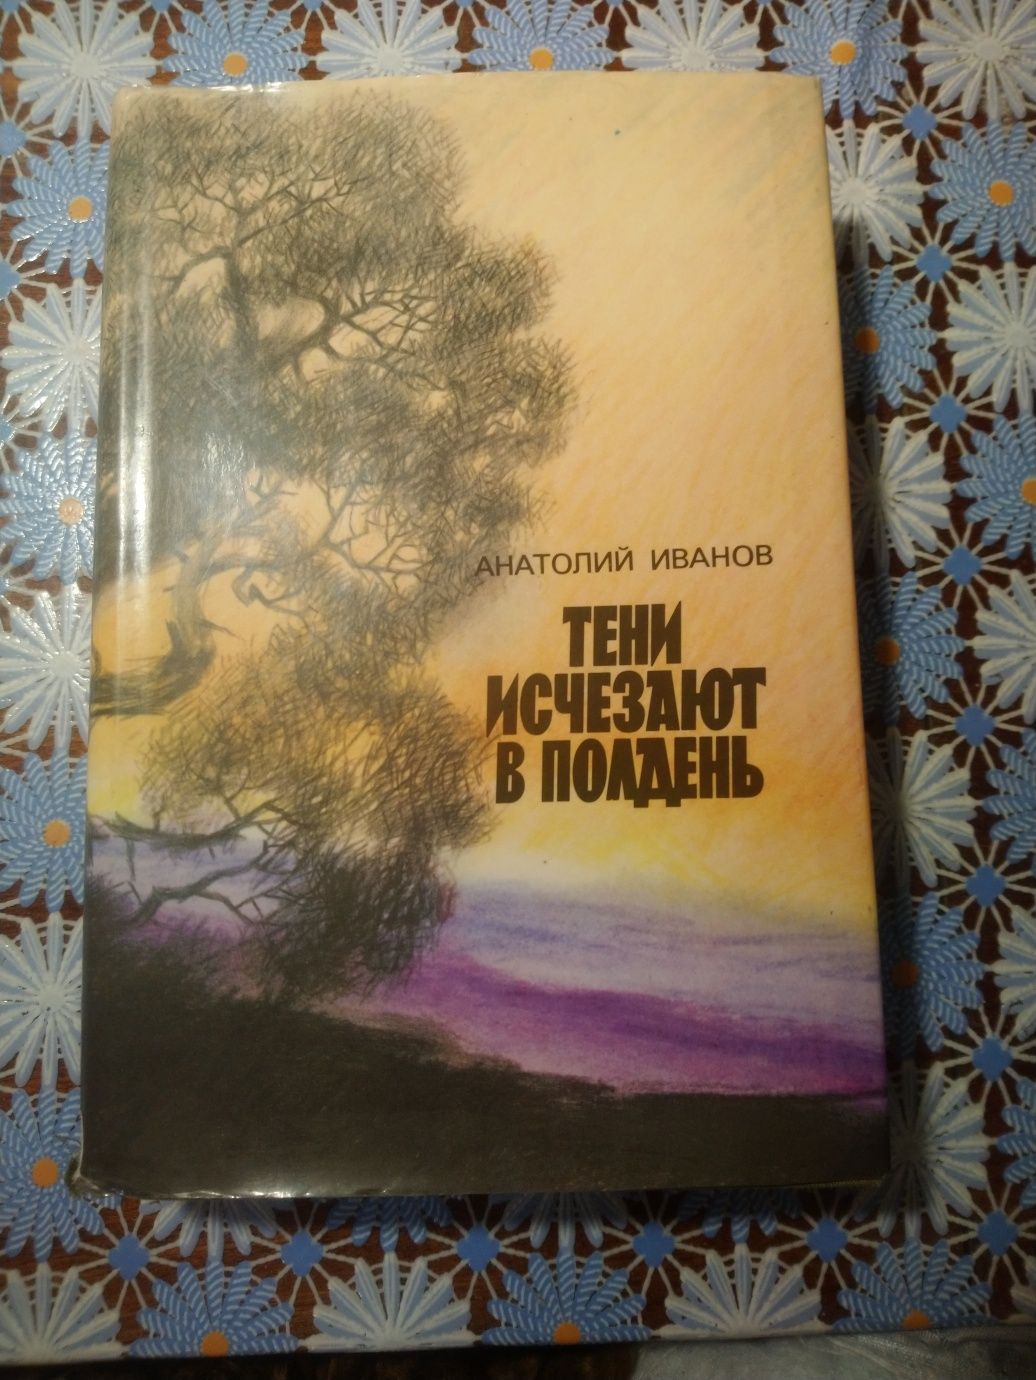 Книга "Тени исчезают в полдень", Иванов, превосходного качества.